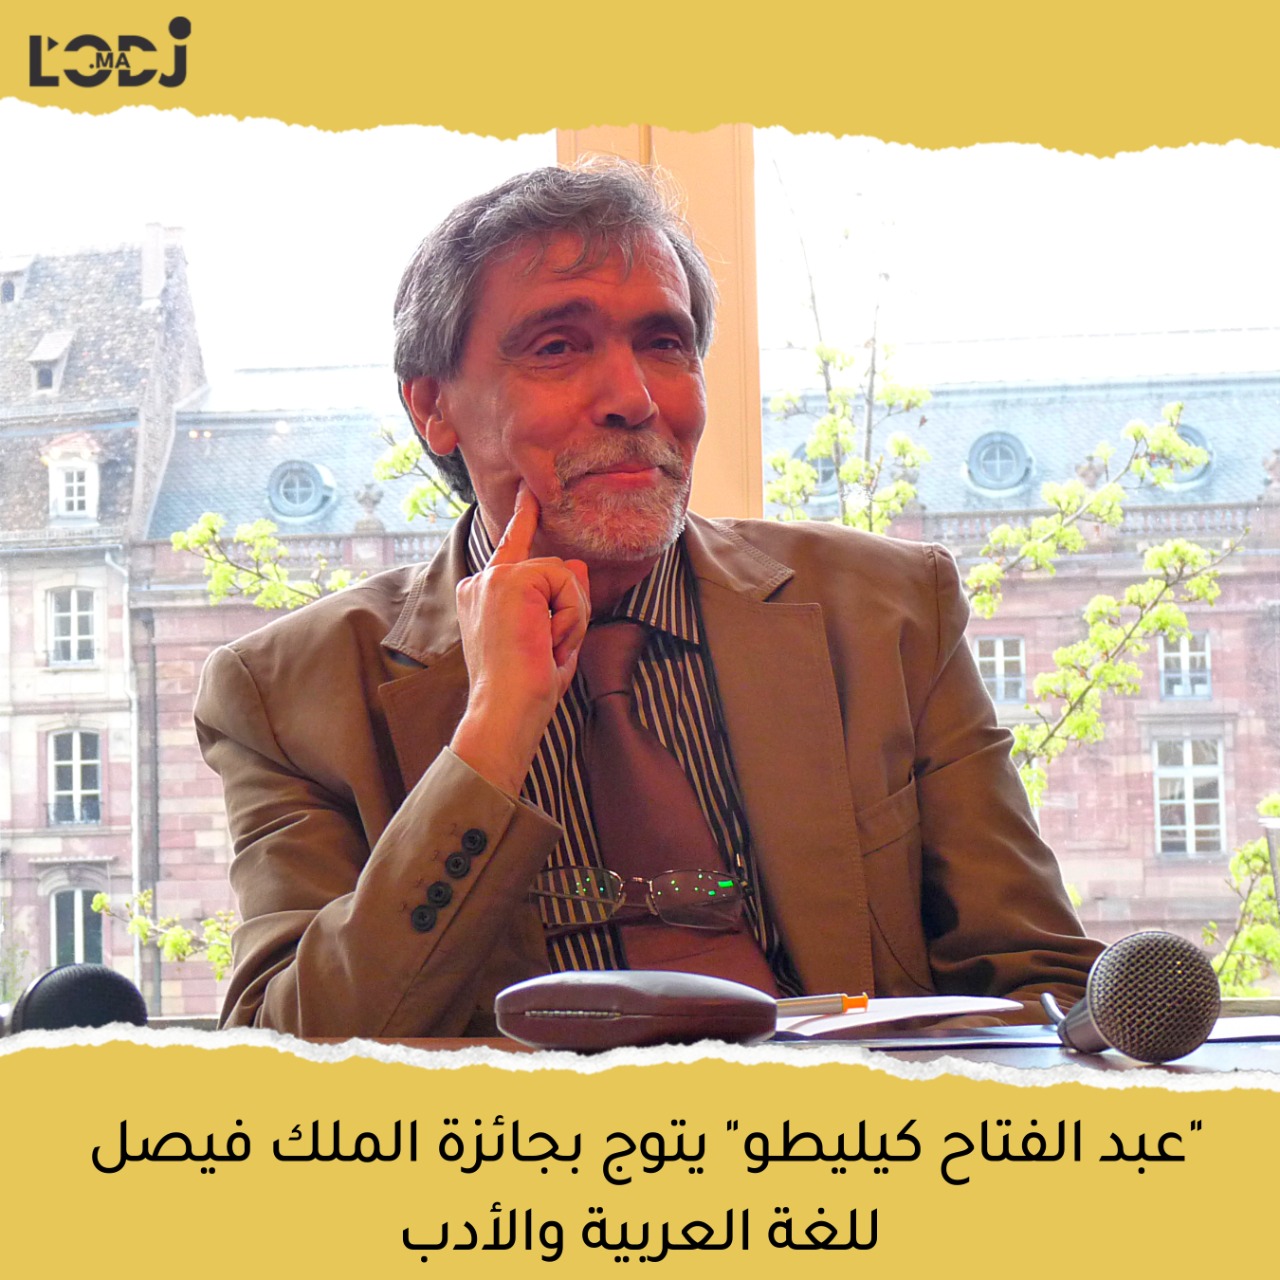 فوز الروائي والناقد المغربي عبد الفتاح كيليطو بجائزة الملك فيصل للغة العربية والأدب (دورة 2023 )